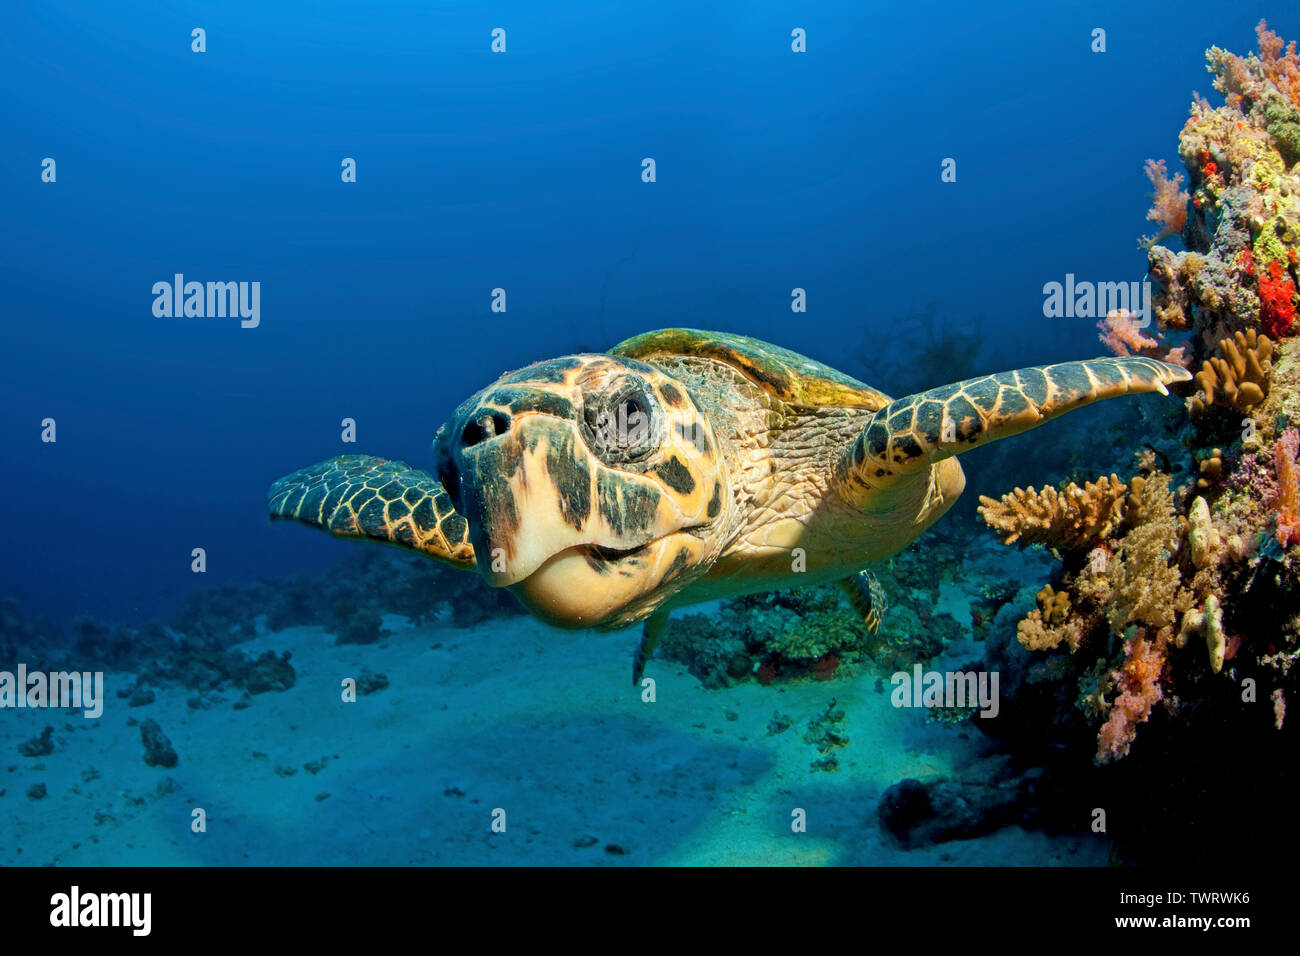 Green Sea Turtle (Chelonia mydas), swimming at a coral reef, Port Sudan, Sudan Stock Photo